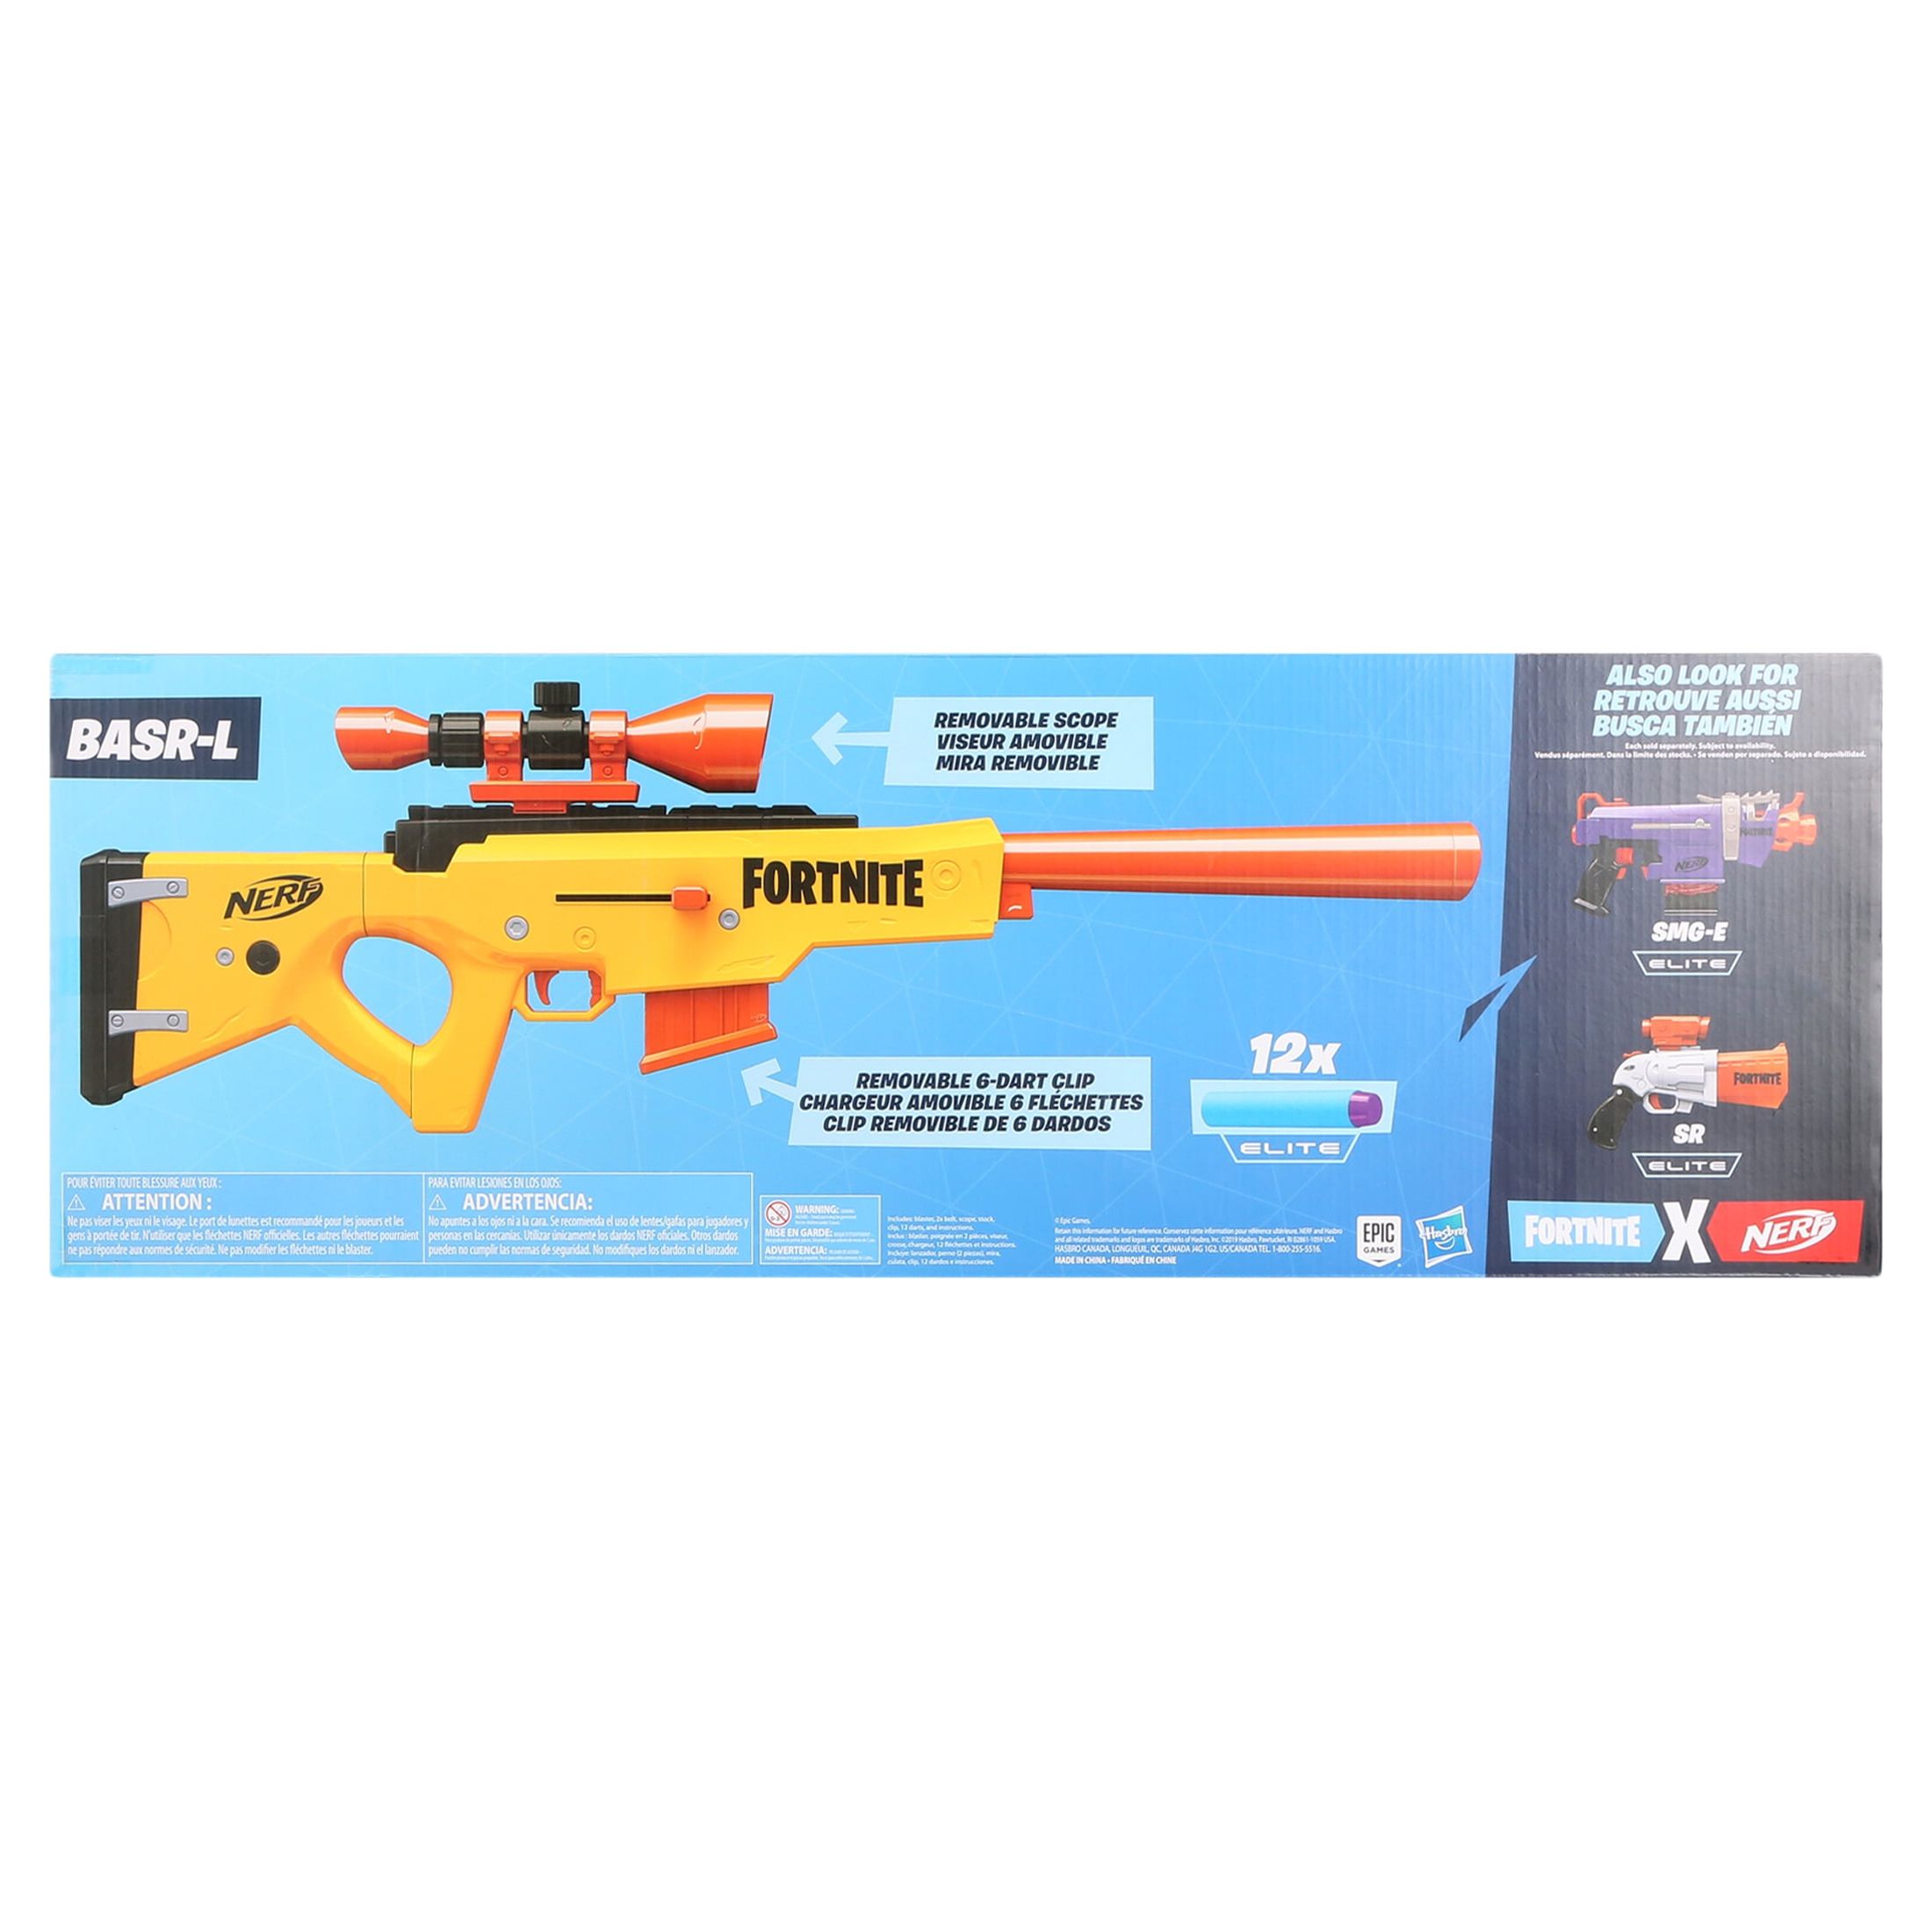 Nerf Fortnite BASR-L Blaster, Includes 12 Official Darts, Kids Toy